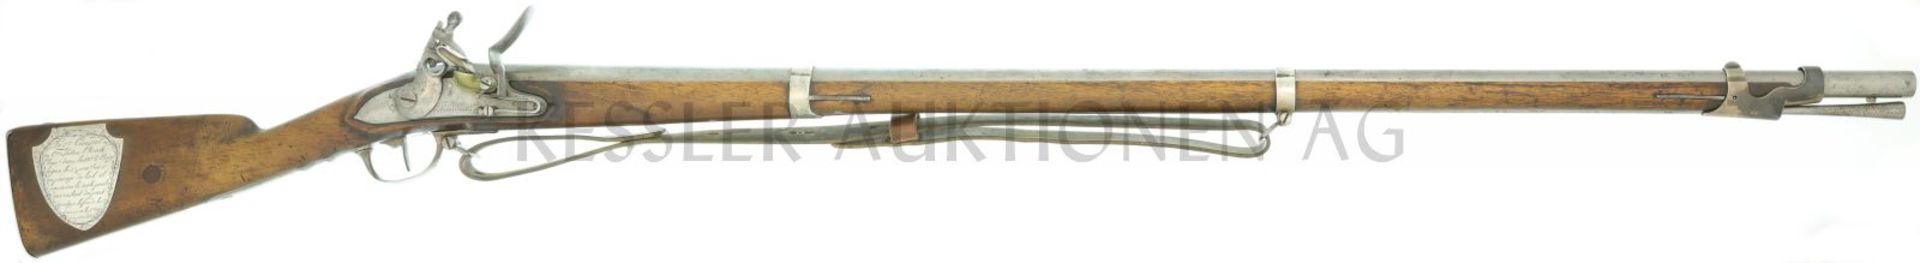 Steinschlossgewehr 1777 "Fusil d'honneur", Kal. 17.6mm LL 1140, TL 1525mm, Laufwurzel sign.: "Ent.